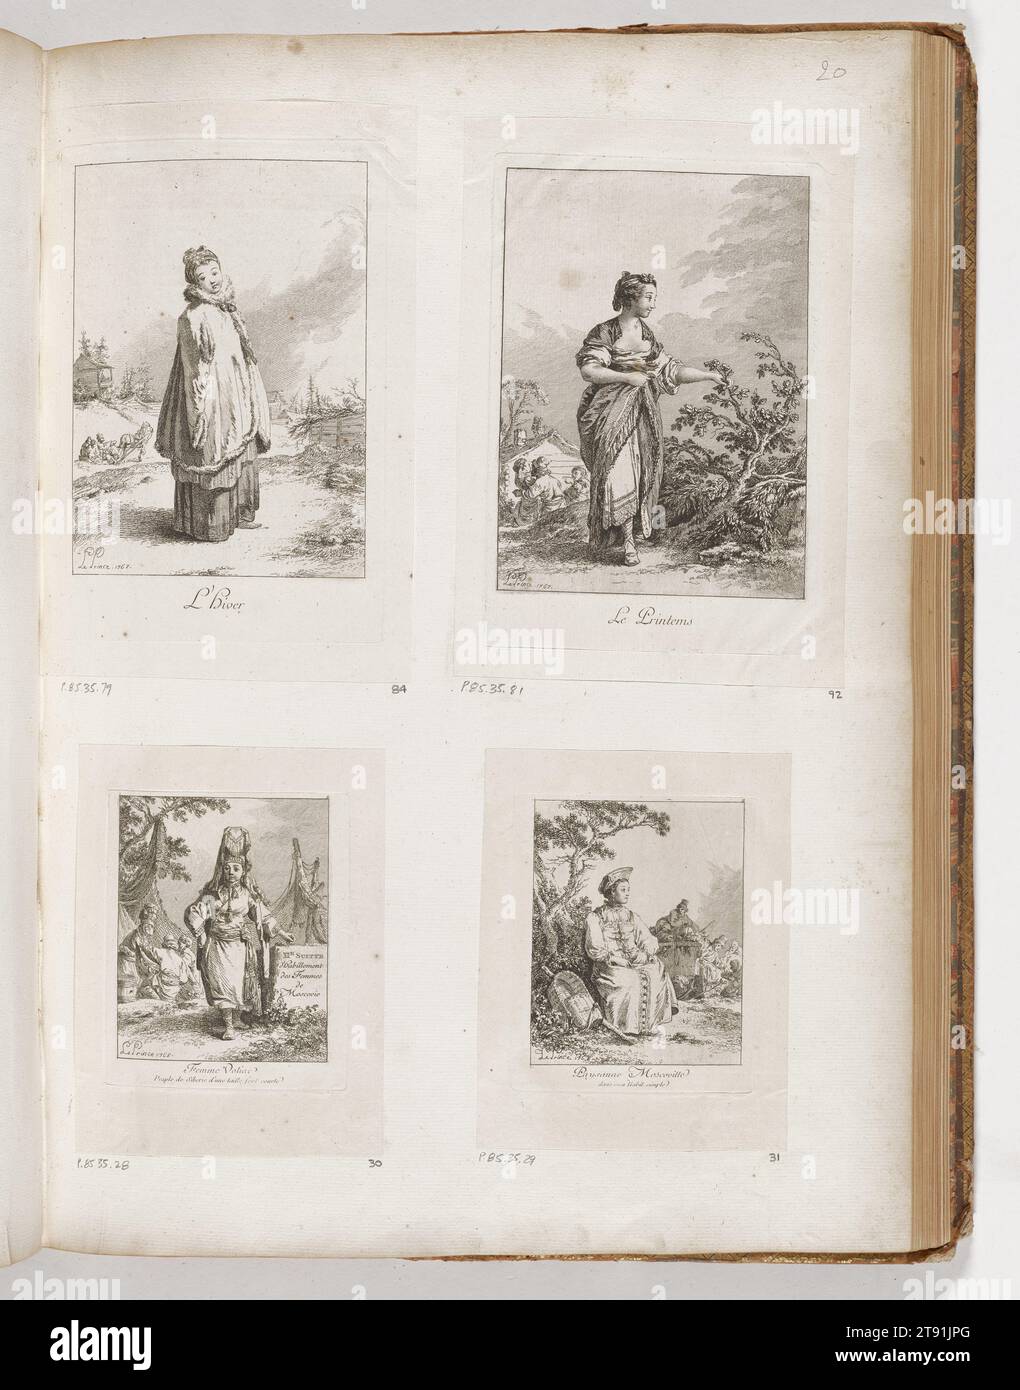 Frühjahr 1767, Jean-Baptiste Le Prince, Französisch, 1734 - 1781, 3/8 x 3/8 Zoll (18,73 x 13,65 cm) (Bild)8 5/8 x 5 3/4 Zoll (21,91 x 14,61 cm) (Platte)9 3/4 x 6 7/8 Zoll (24,77 x 17,46 cm) (Blatt), Ätzen und lavis, Frankreich, 18. Jahrhundert Stockfoto